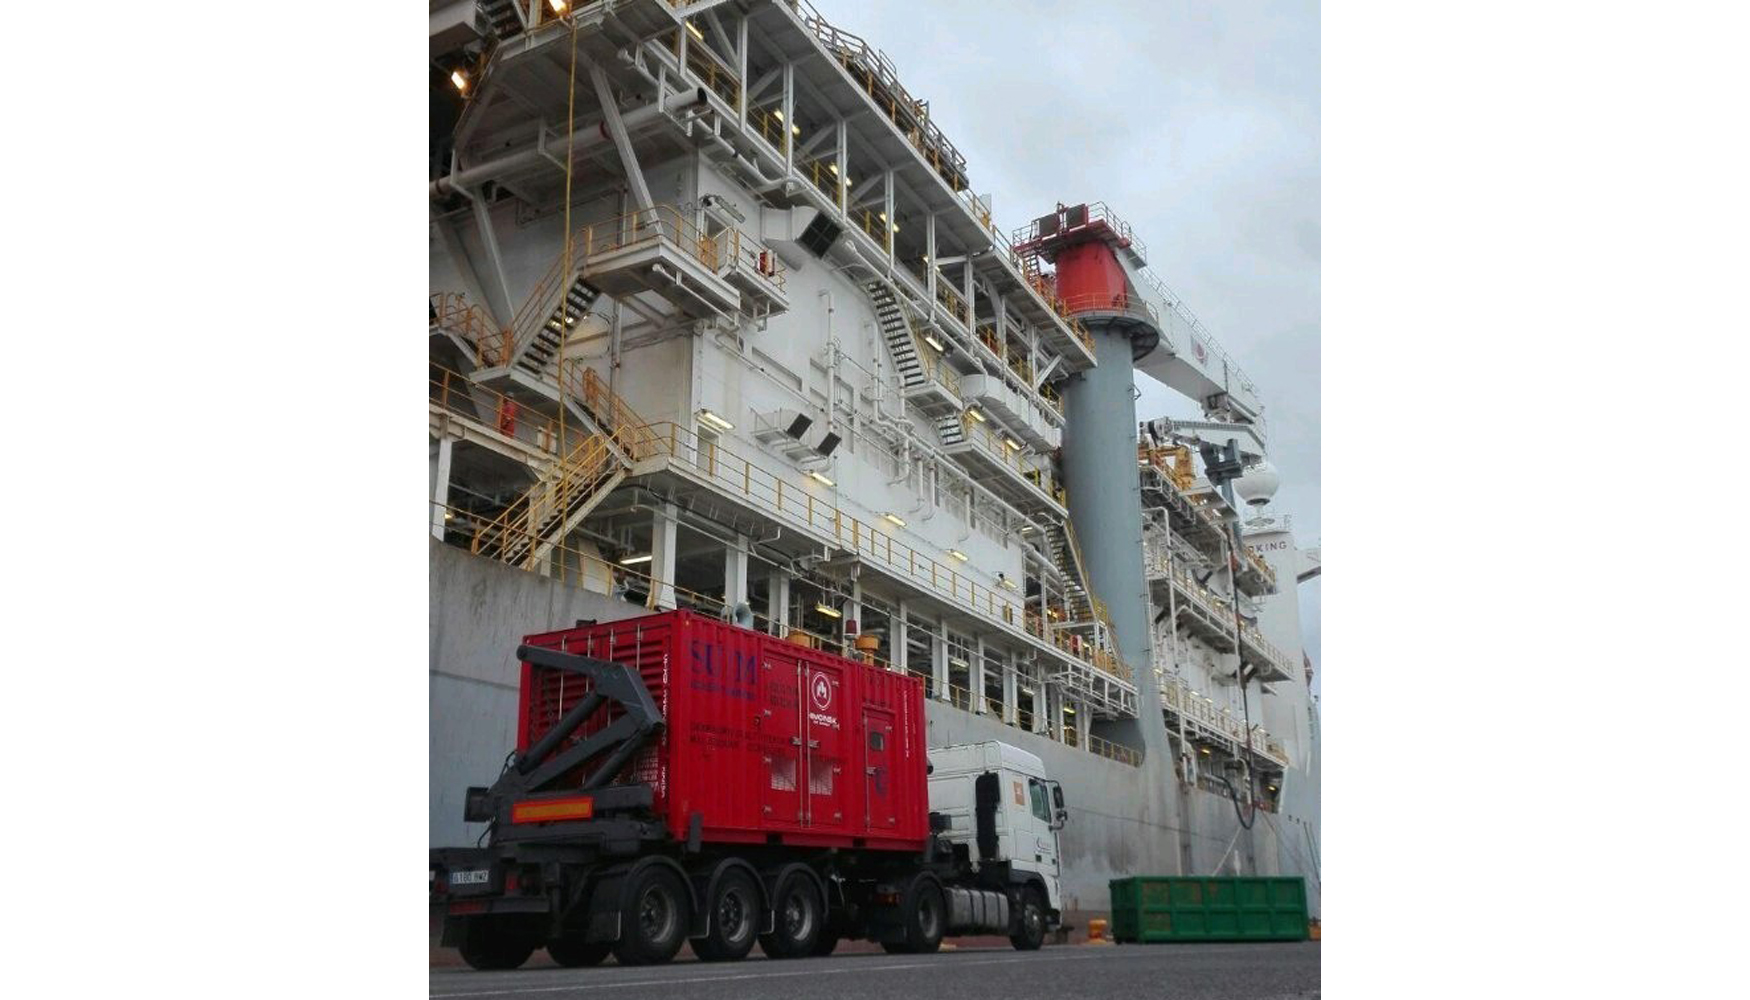 Grupo electrgeno Himoinsa en las tareas de mantenimiento de las plataformas petrolferas en el Puerto de Las Palmas de Gran Canaria...